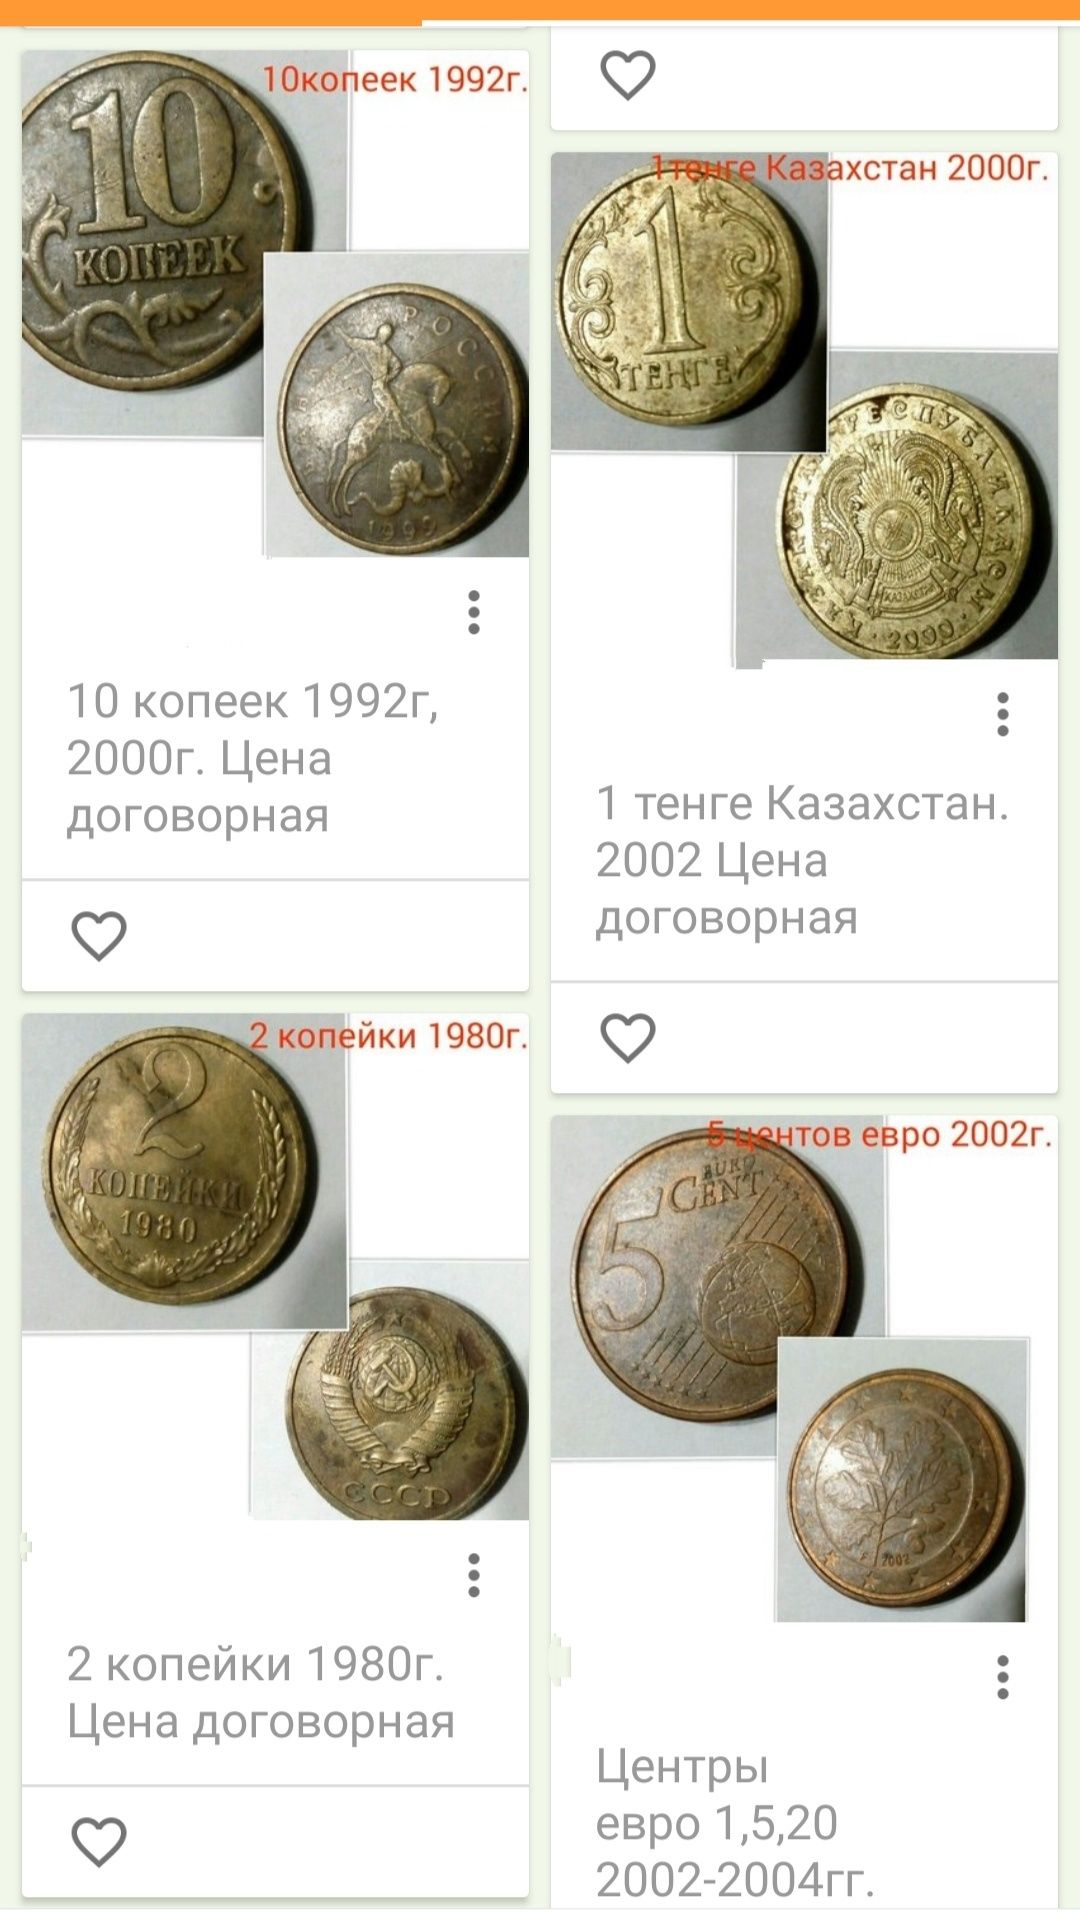 Металлические денежные знаки
Много советских разных лет
Есть бумажные